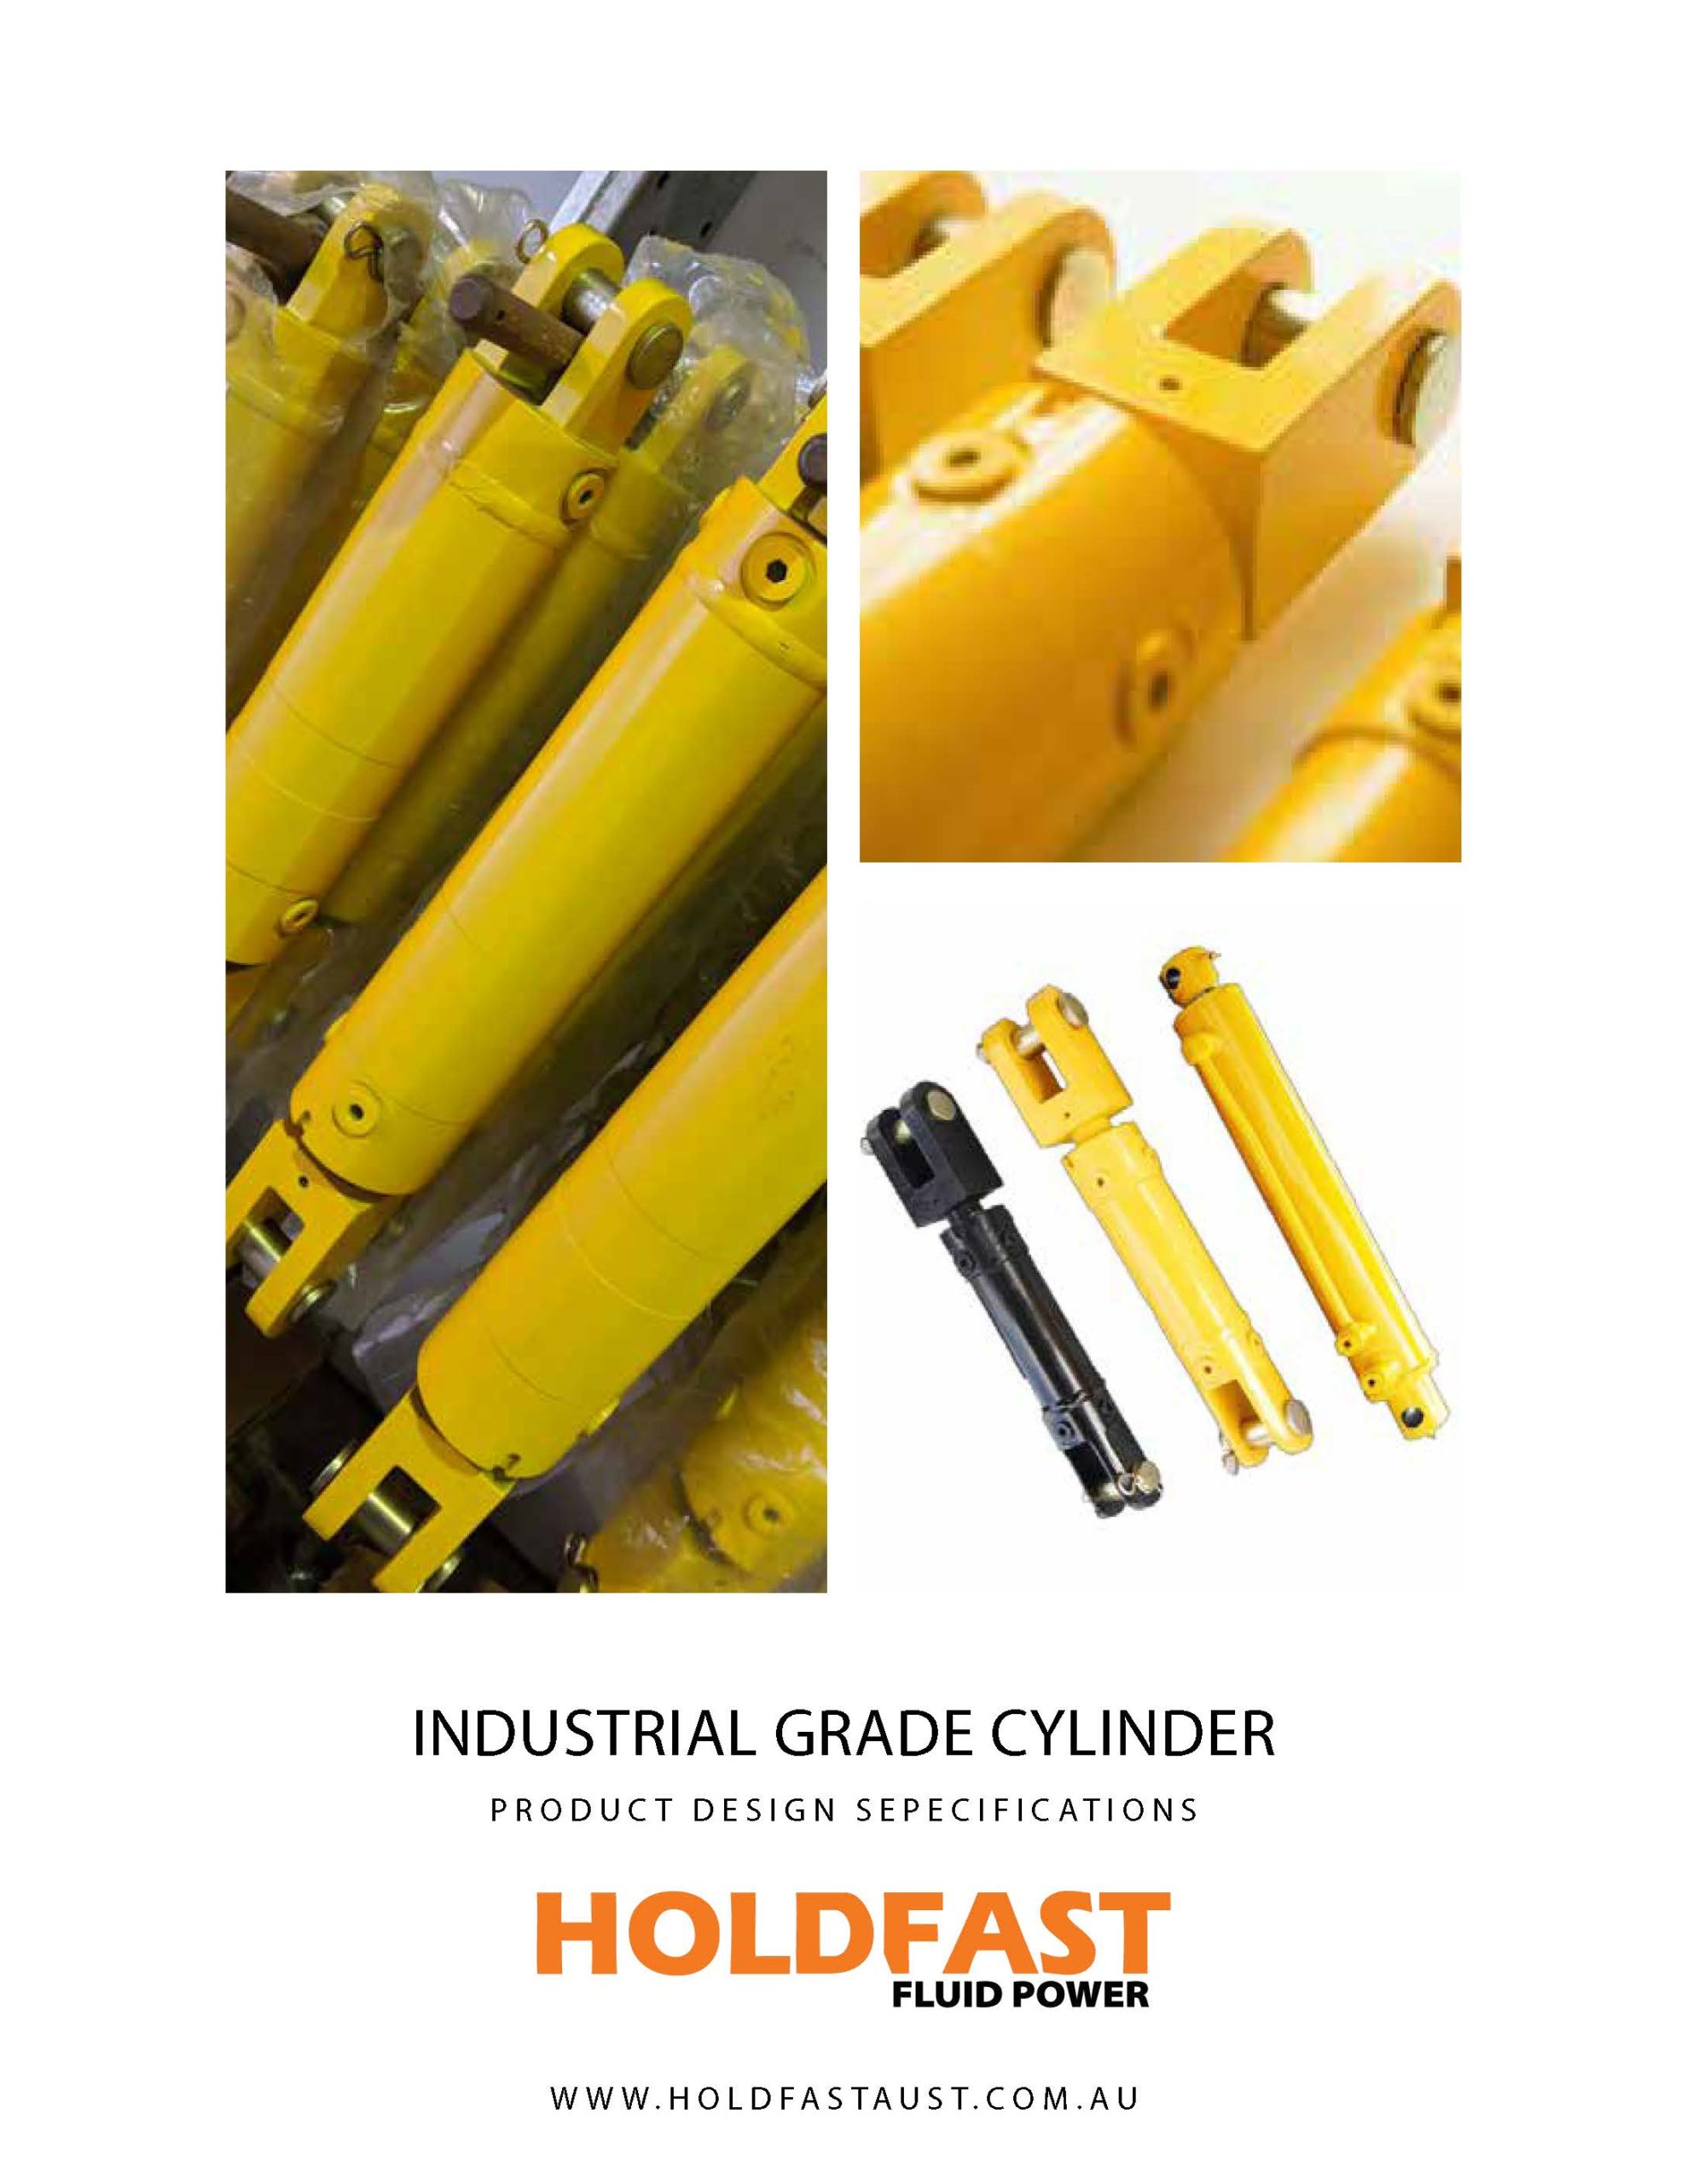 Dantal Hydraulic Cylinders